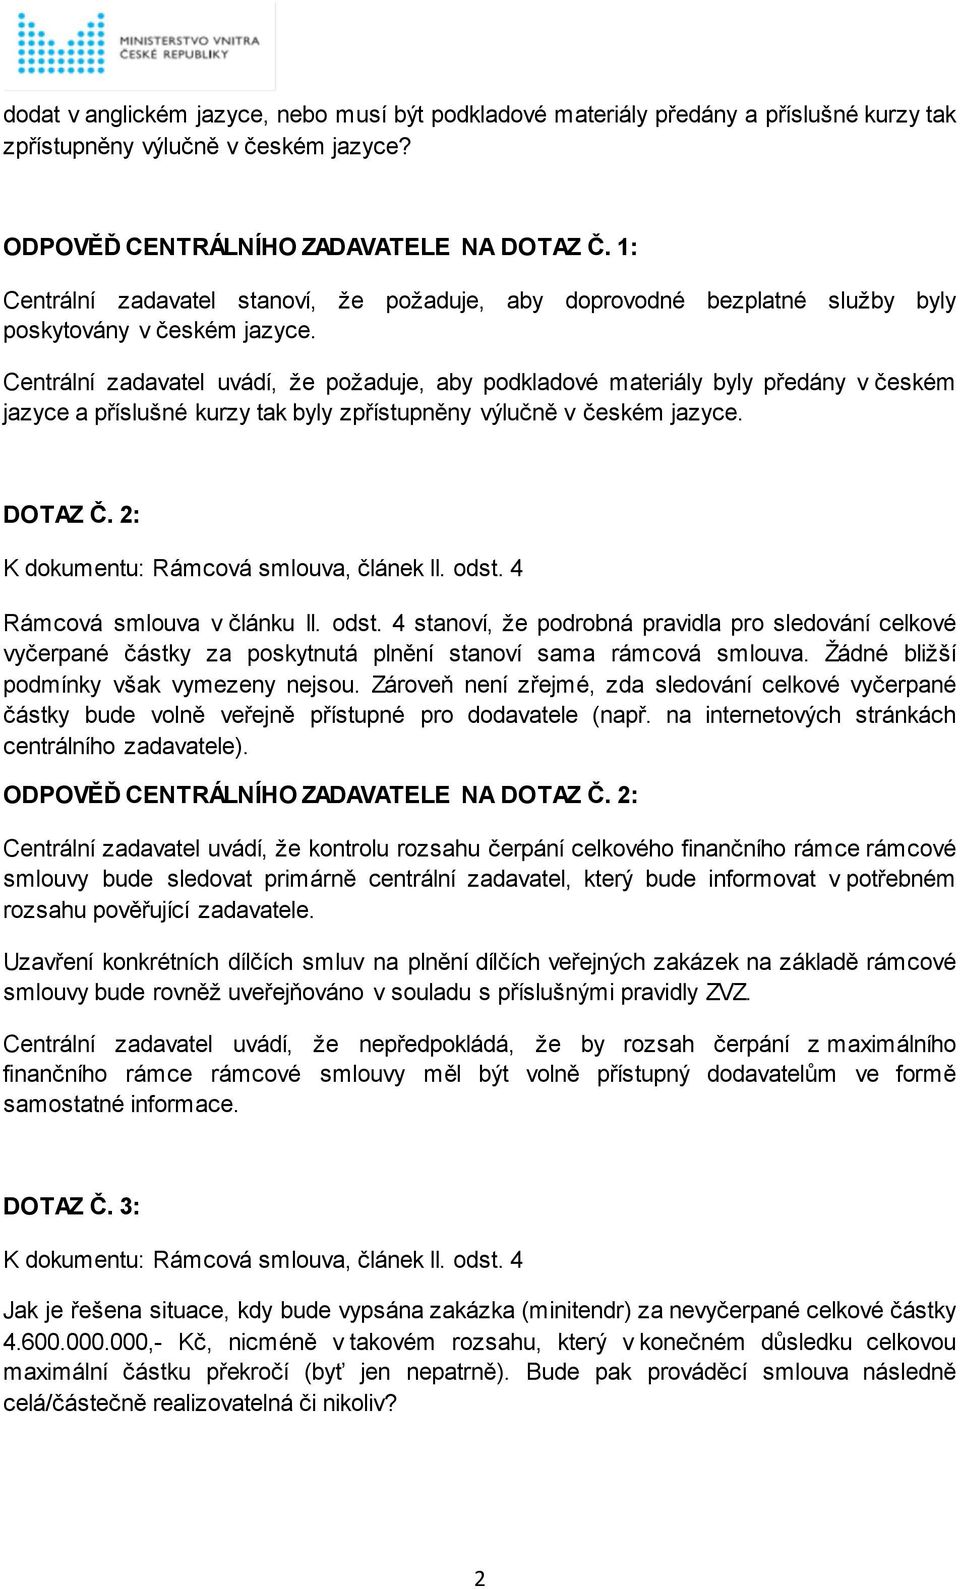 Centrální zadavatel uvádí, že požaduje, aby podkladové materiály byly předány v českém jazyce a příslušné kurzy tak byly zpřístupněny výlučně v českém jazyce. DOTAZ Č.